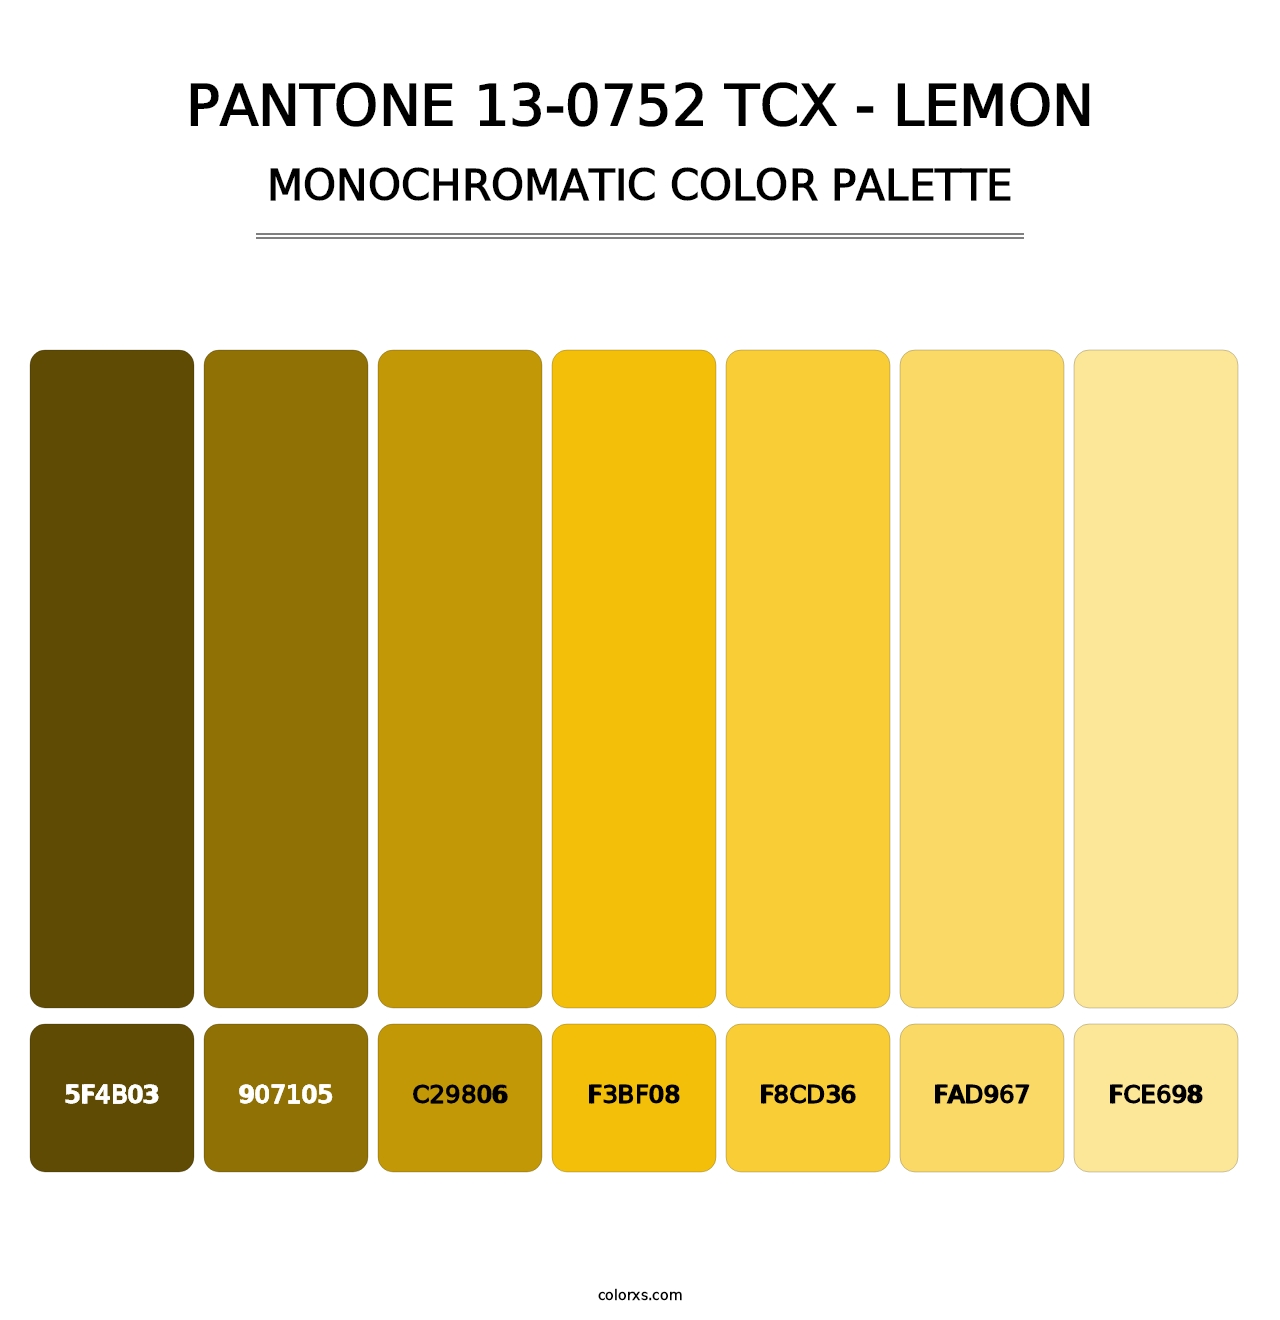 PANTONE 13-0752 TCX - Lemon - Monochromatic Color Palette